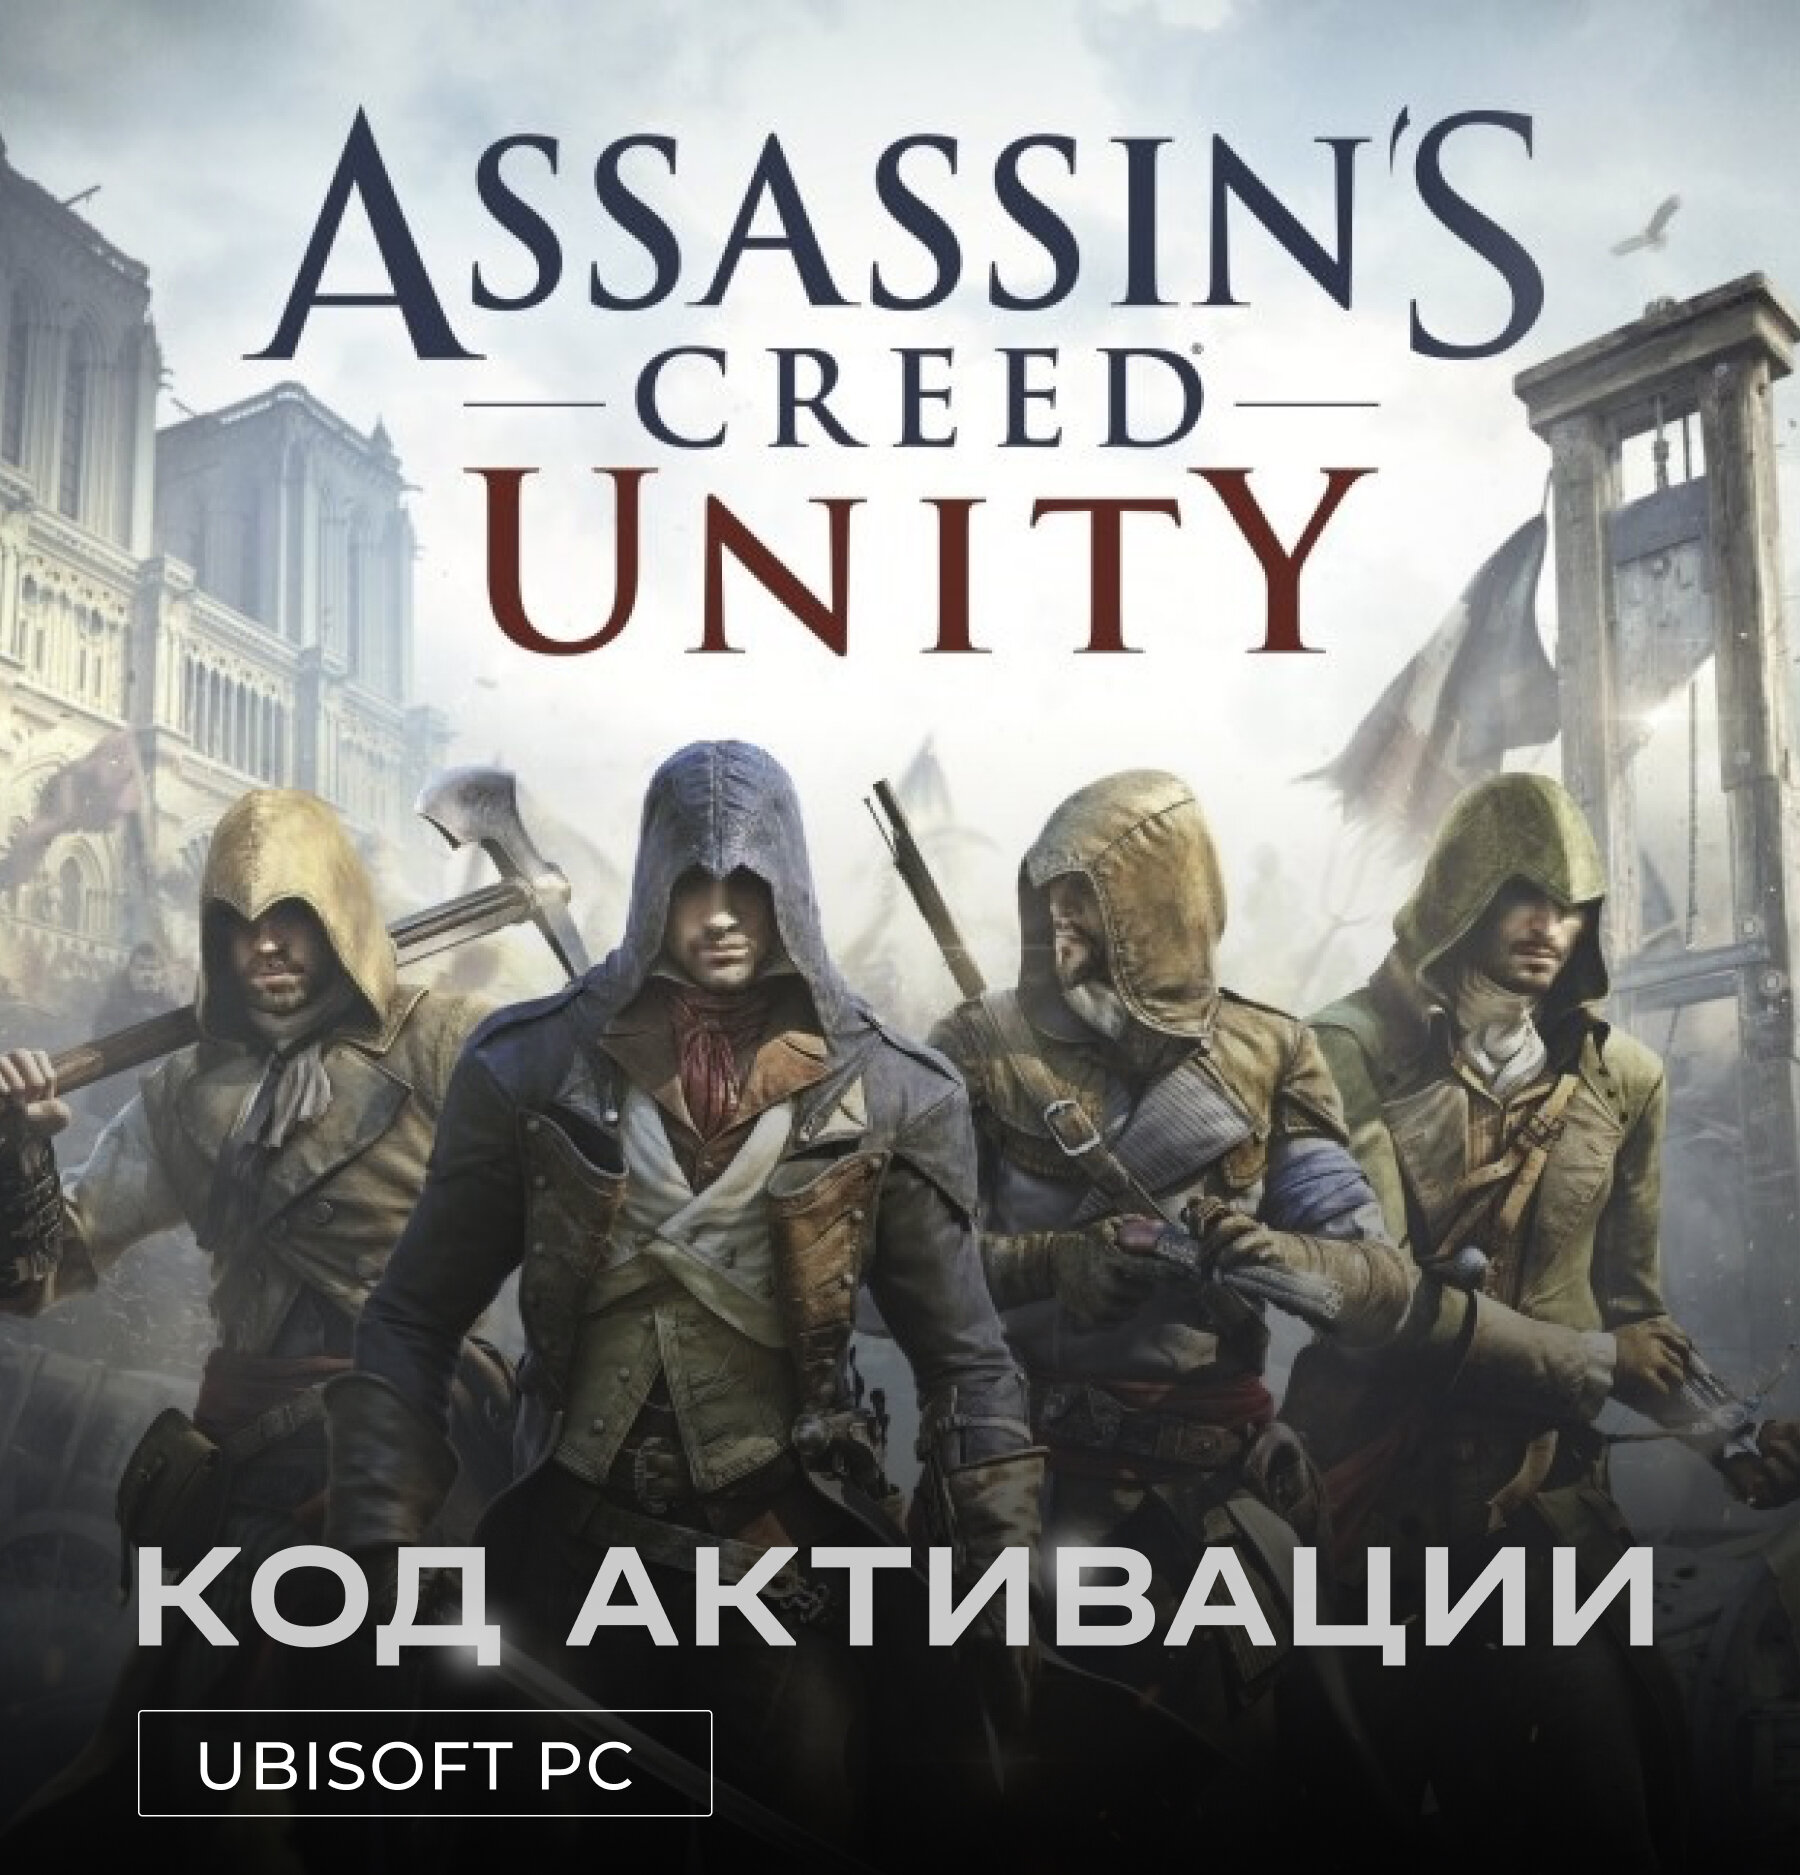 Игра Assassin’s Creed Unity для PC Ubisoft (РФ), полностью на русском, электронный ключ